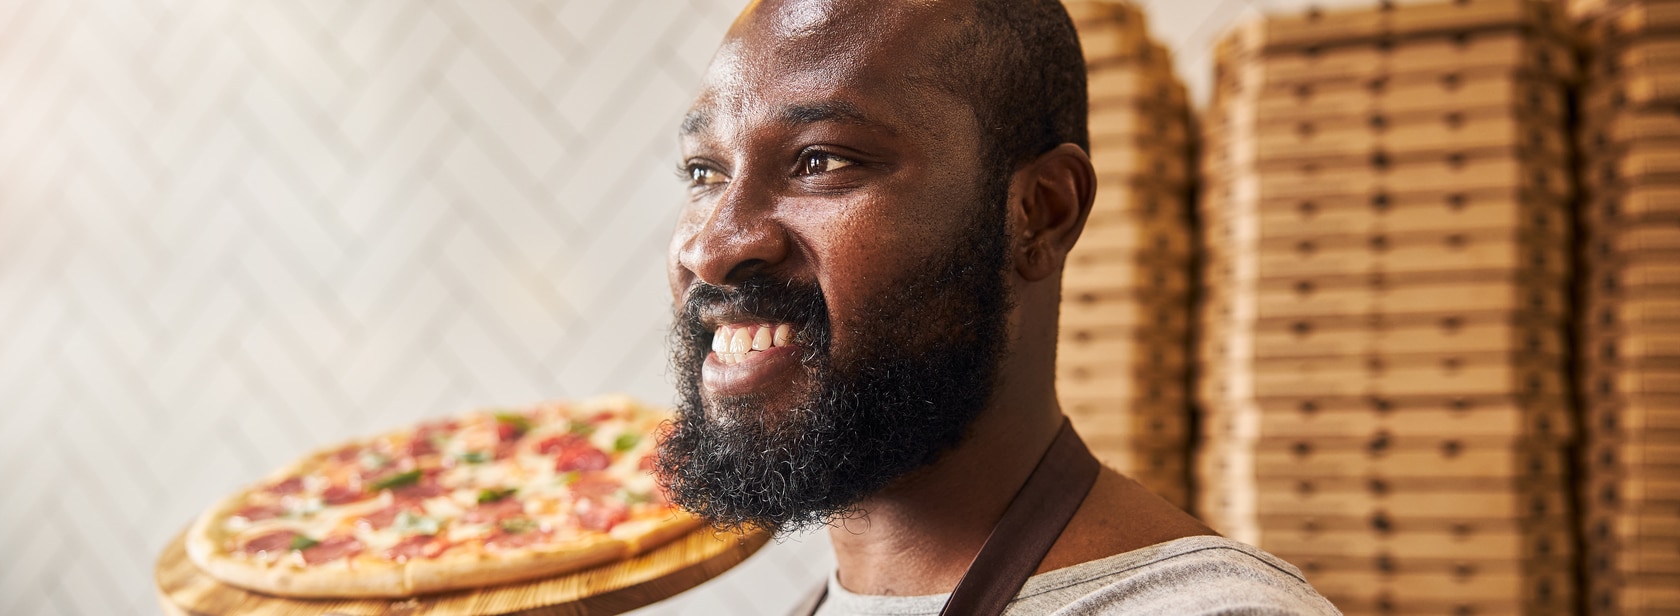 Conheça as melhores pizzarias Super do país eleitas pelo iFood!